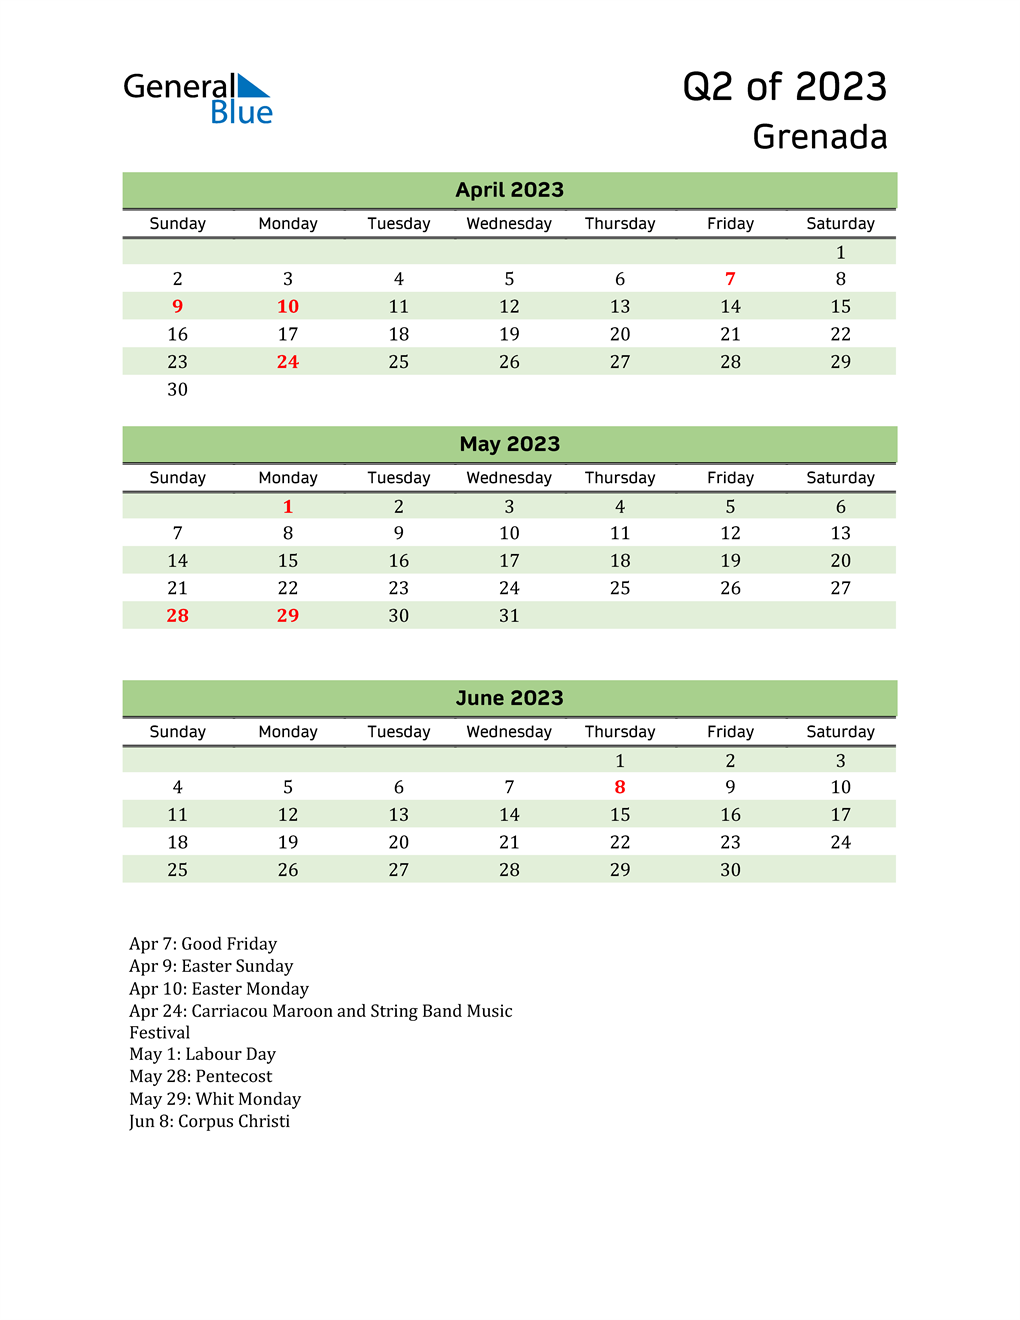  Quarterly Calendar 2023 with Grenada Holidays 